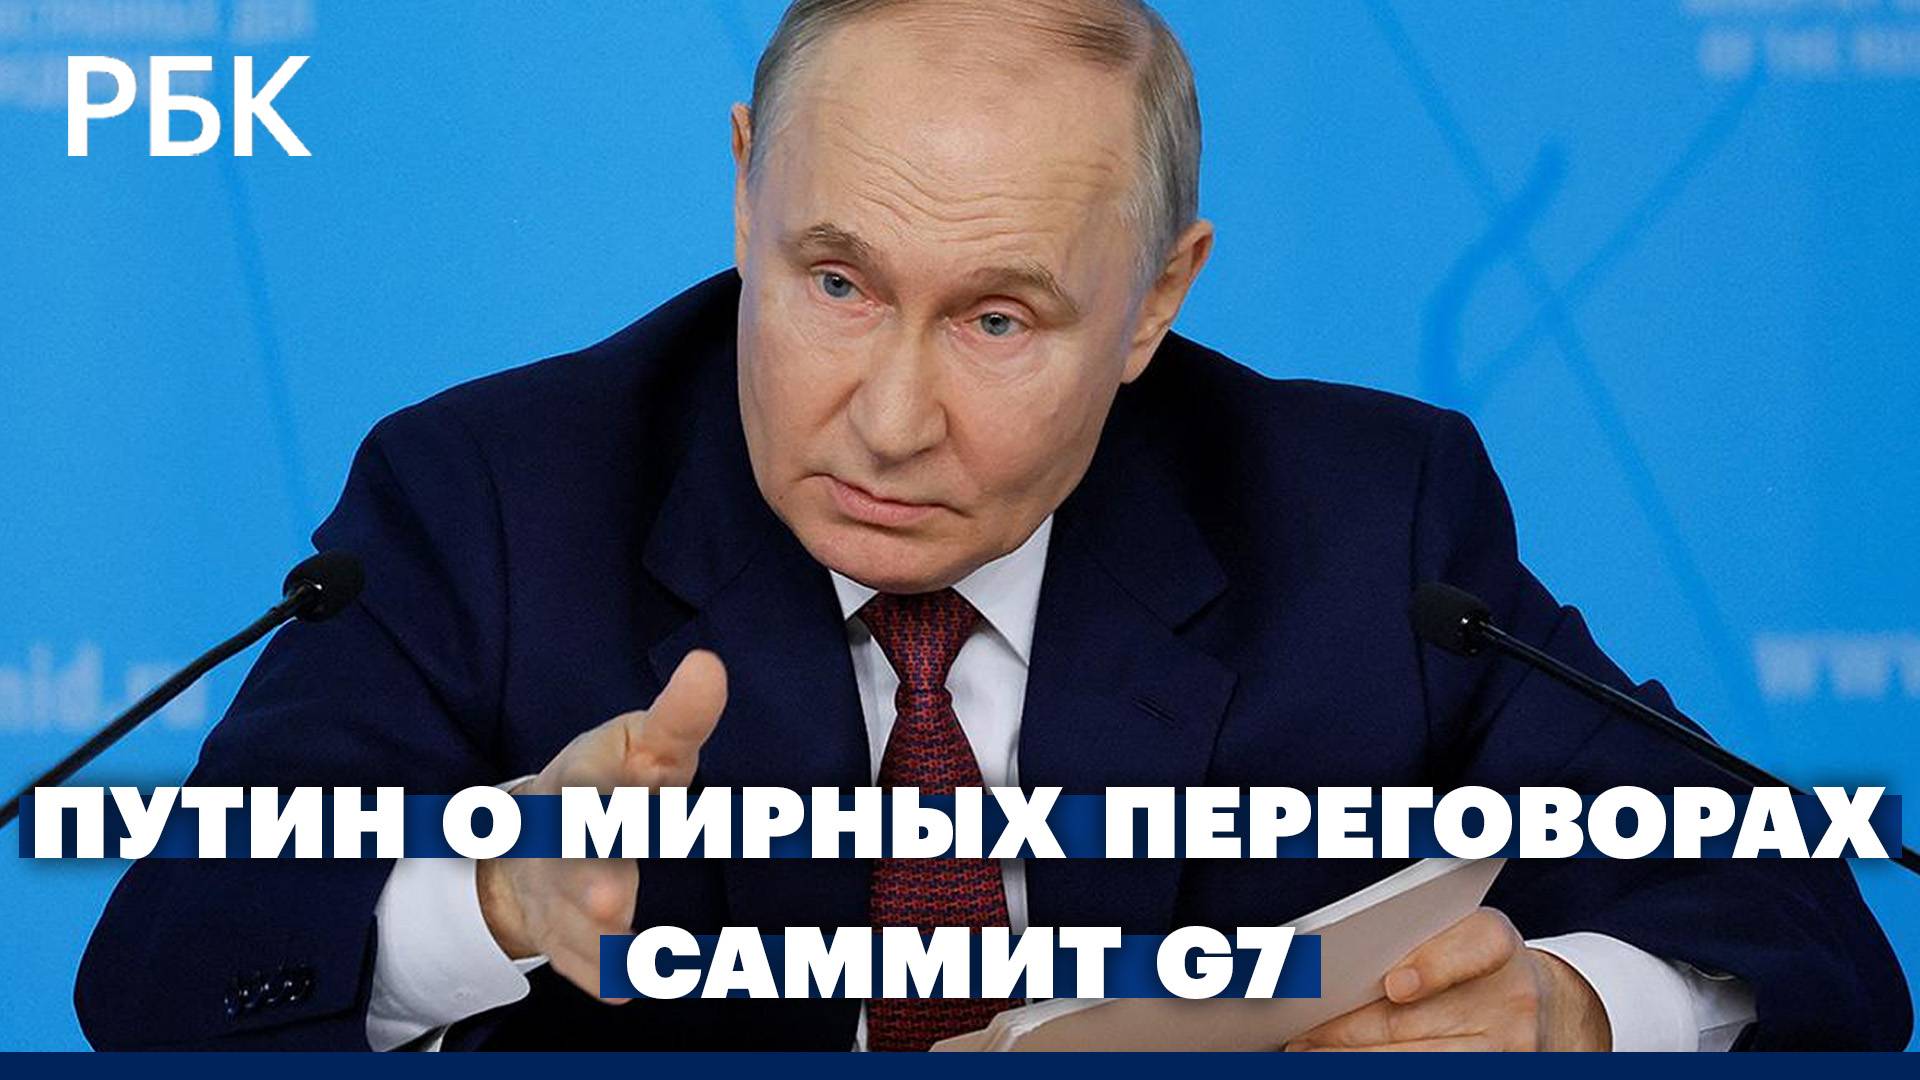 Путин выдвинул условия для мирных переговоров. Саммит G7